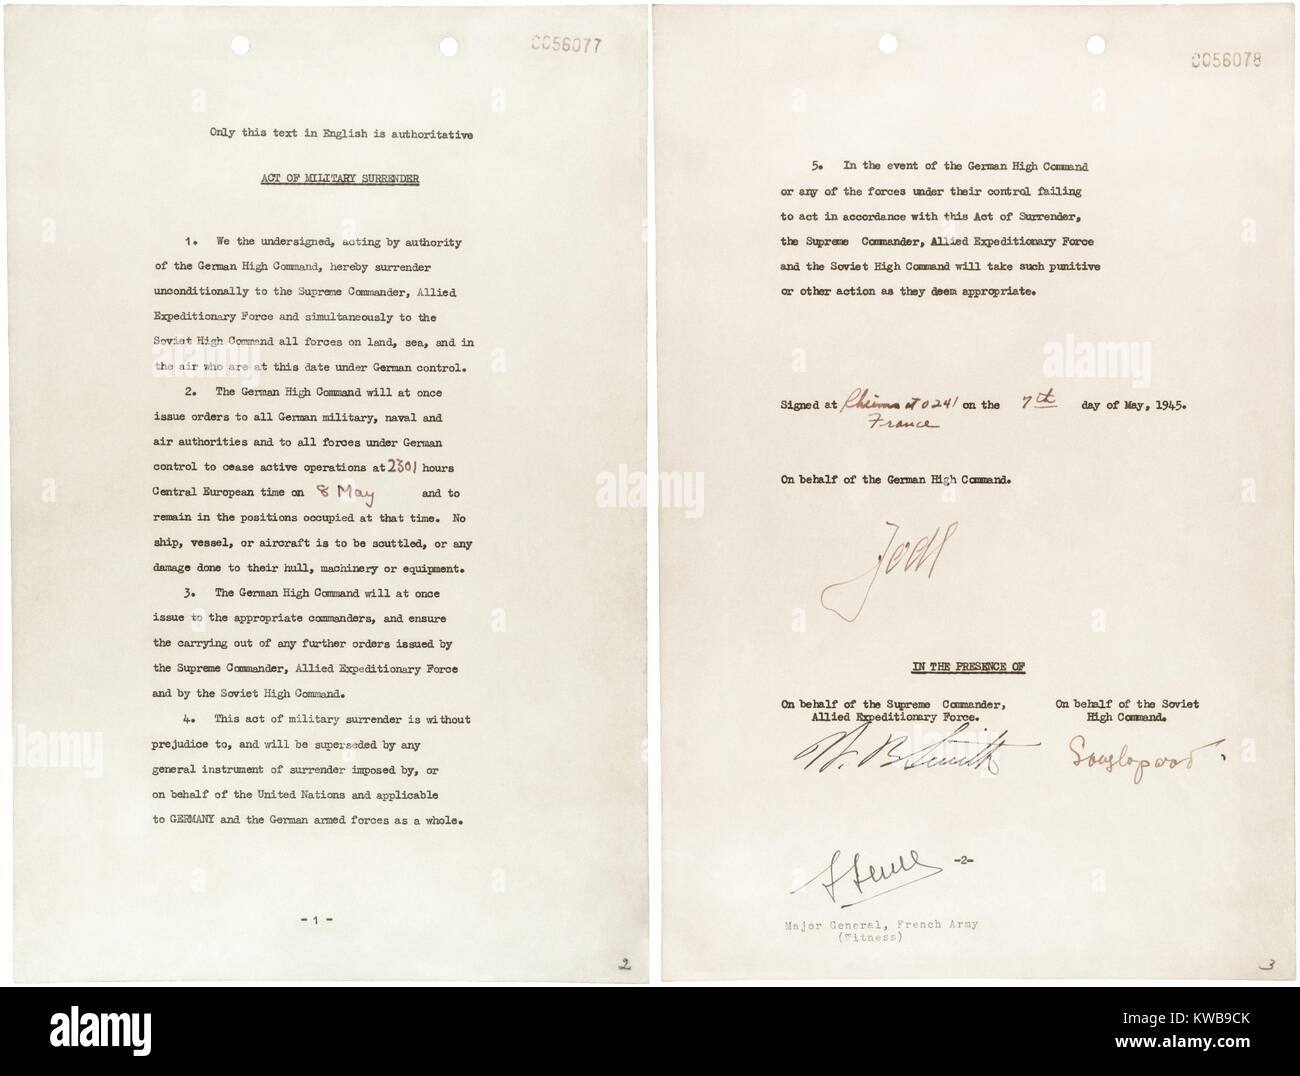 Deutschland Kapitulation von General Alfred Jodl, Chef des Stabes der Bundeswehr unterzeichnet. Es war im Alliierten Hauptquartier in Reims, 7. Mai 1945 unterzeichnet. Weltkrieg 2. (BSLOC 2014 10 259) Stockfoto